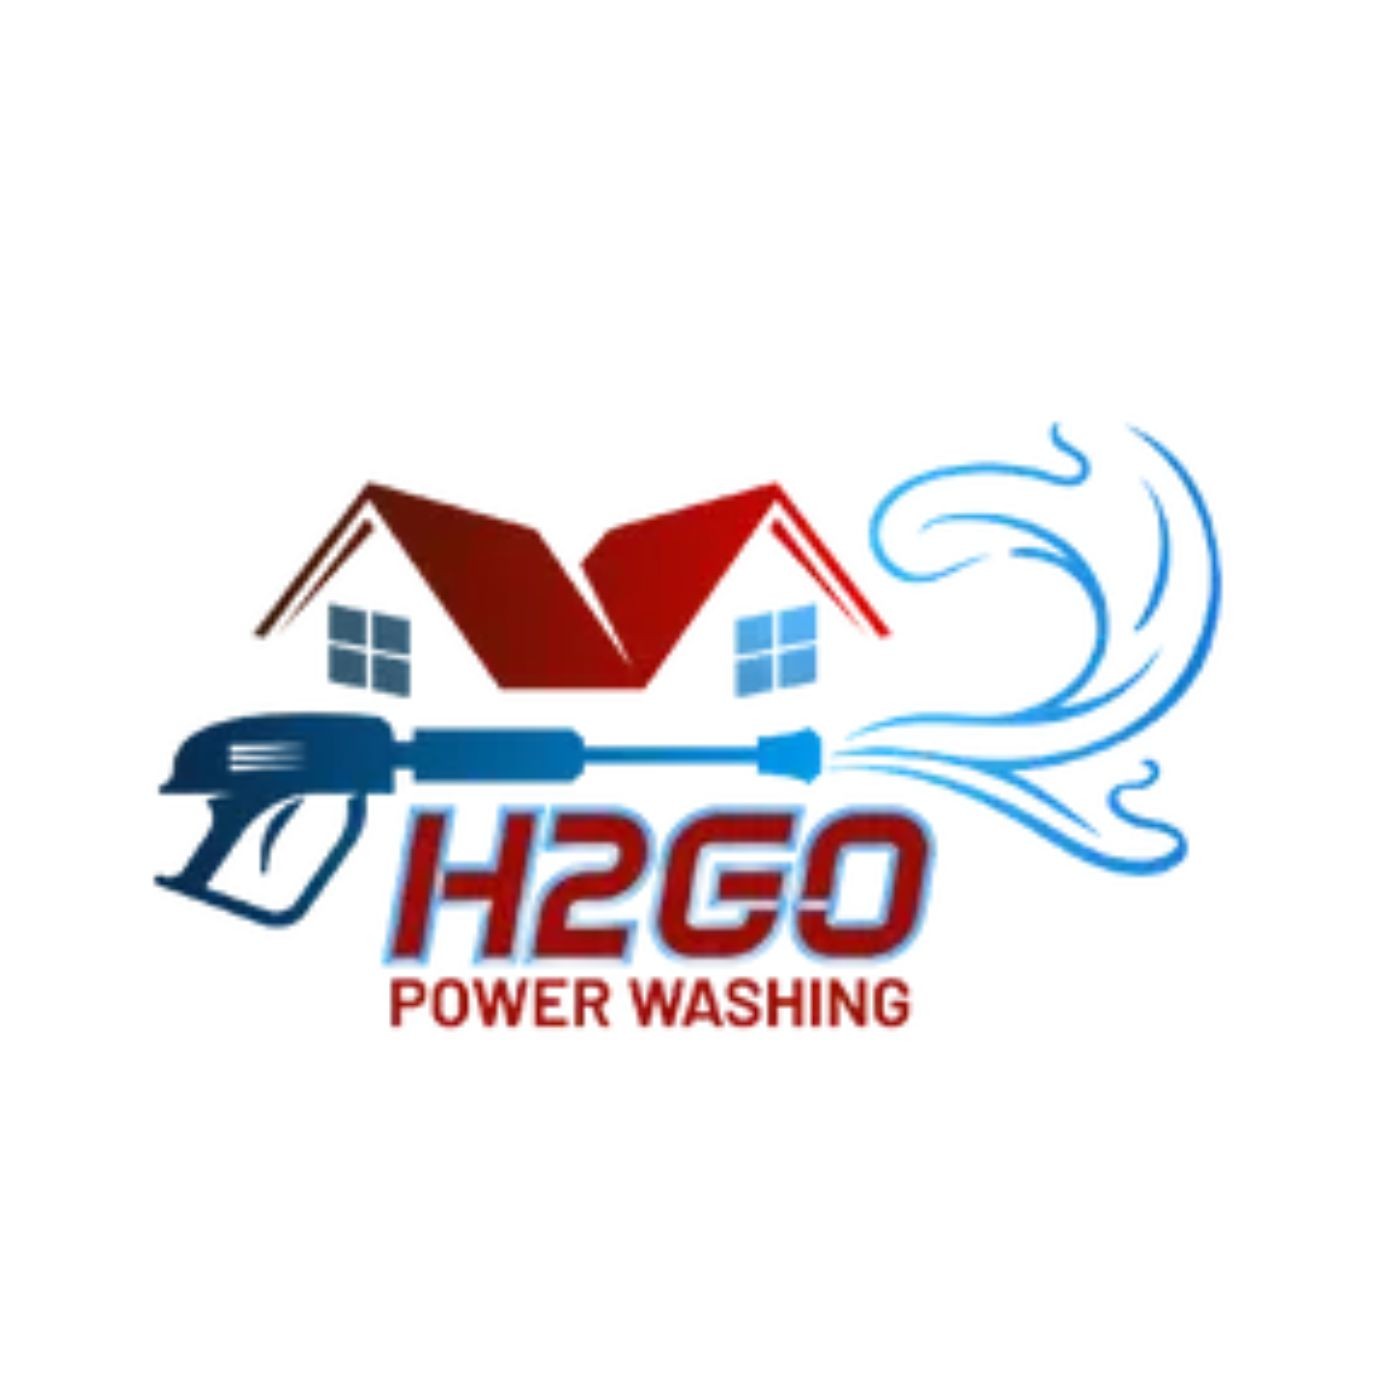 H2GOPowerWashing